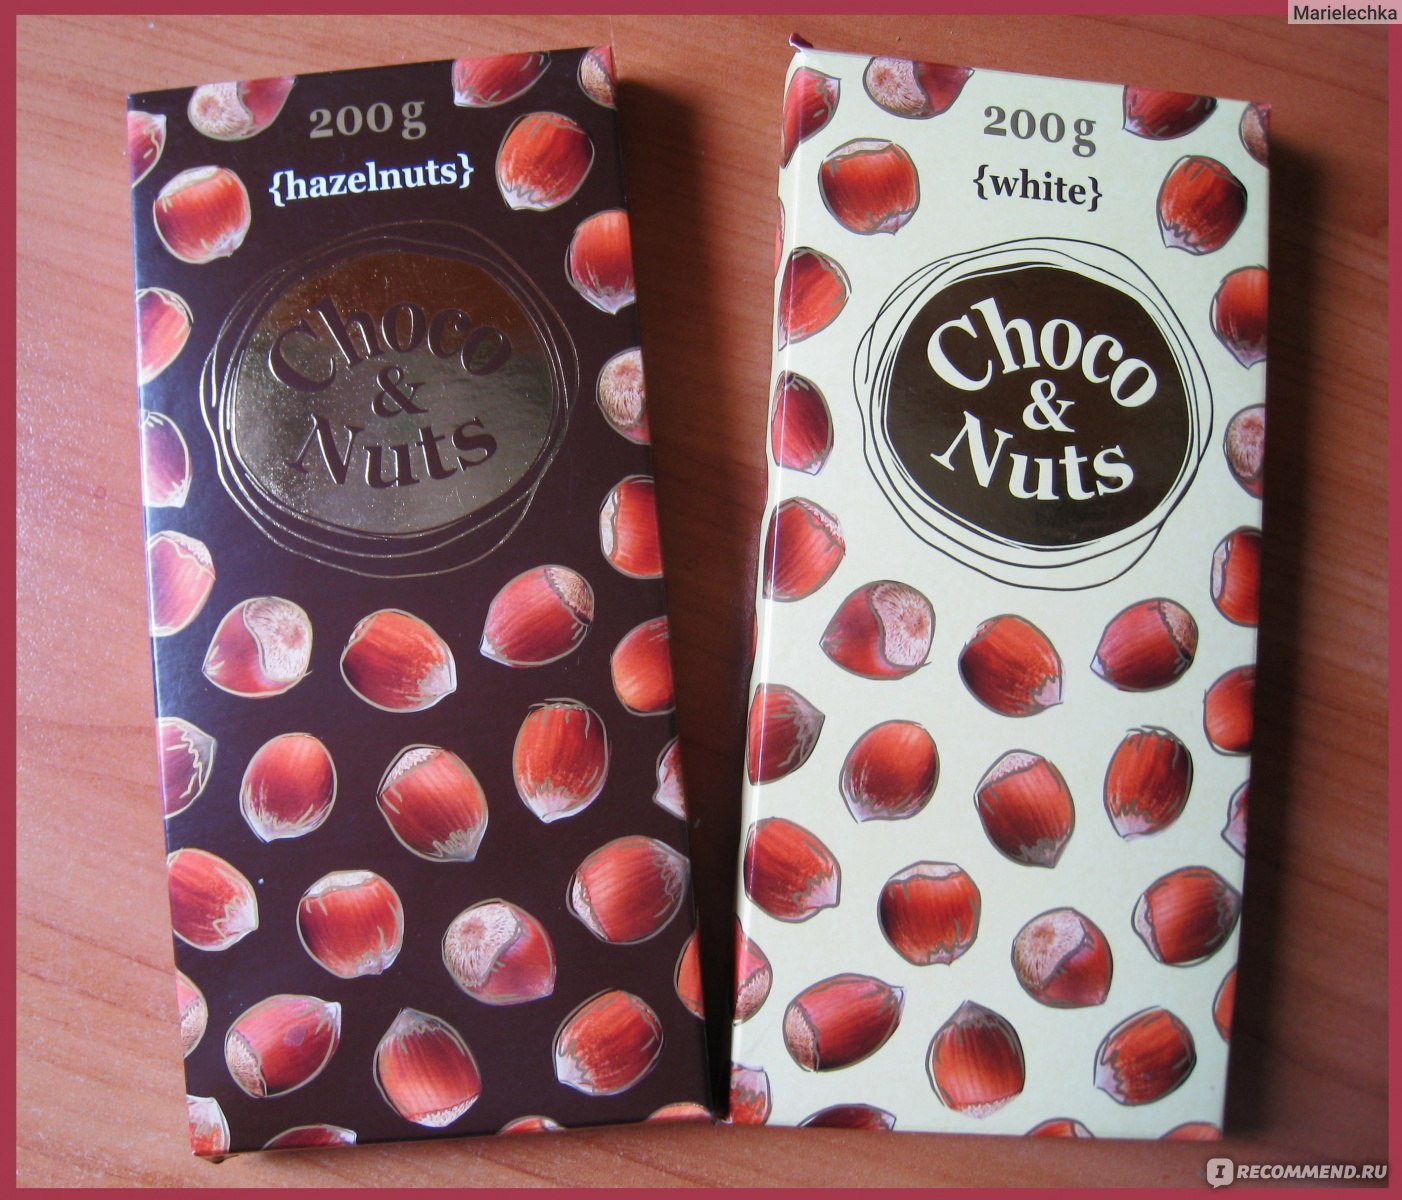 Чоко шоколадку. Шоколад шоко натс. Choco Nuts 200g с фундуком. Choco Nuts 200g белый с фундуком. Шоко натс шоколад с фундуком.